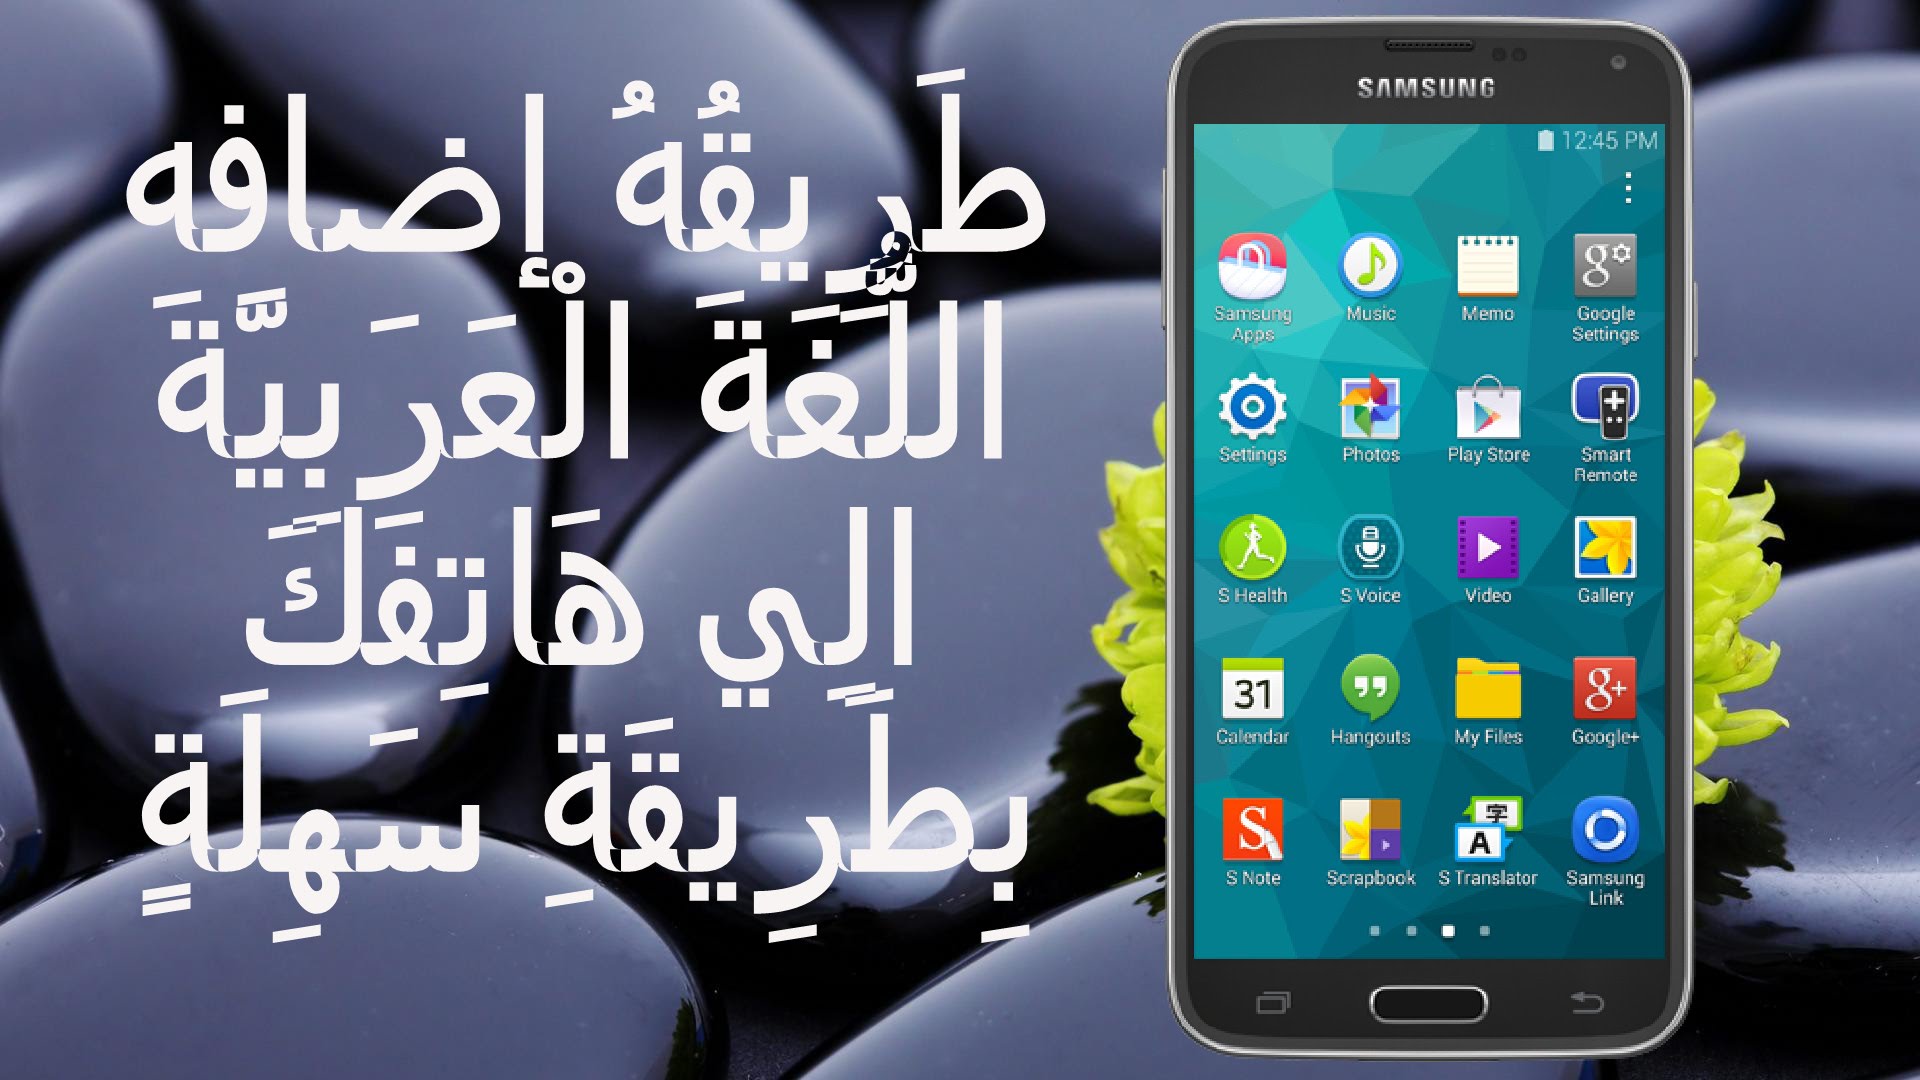 إضف اللُّغَةَ الْعَرَبِيَّةَ الِي هَاتِفَكَ بِطَرِيقَةِ سَهِلَةٍ | Add Arabic Language On Android